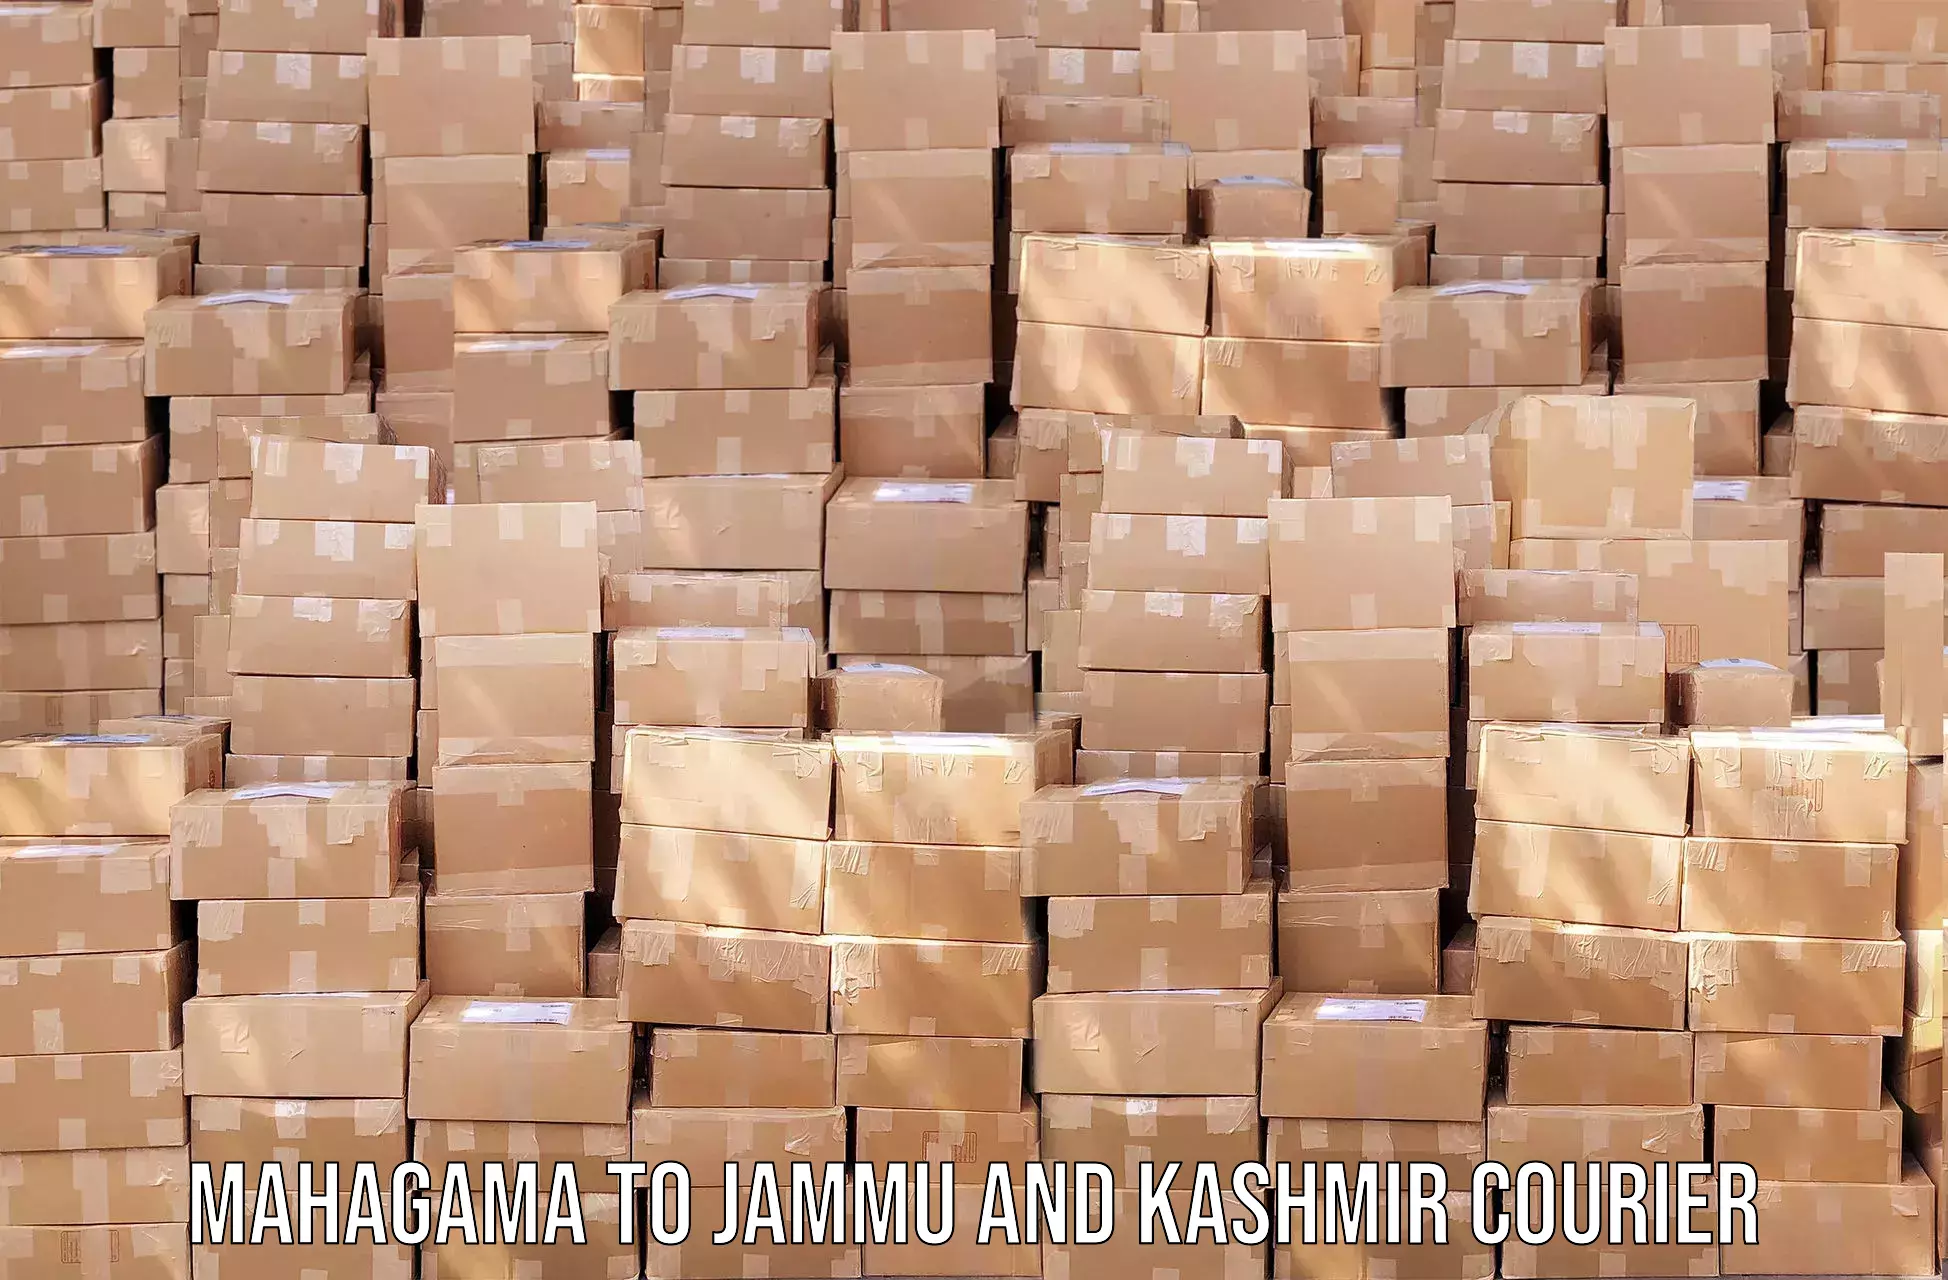 High-capacity parcel service Mahagama to Kulgam